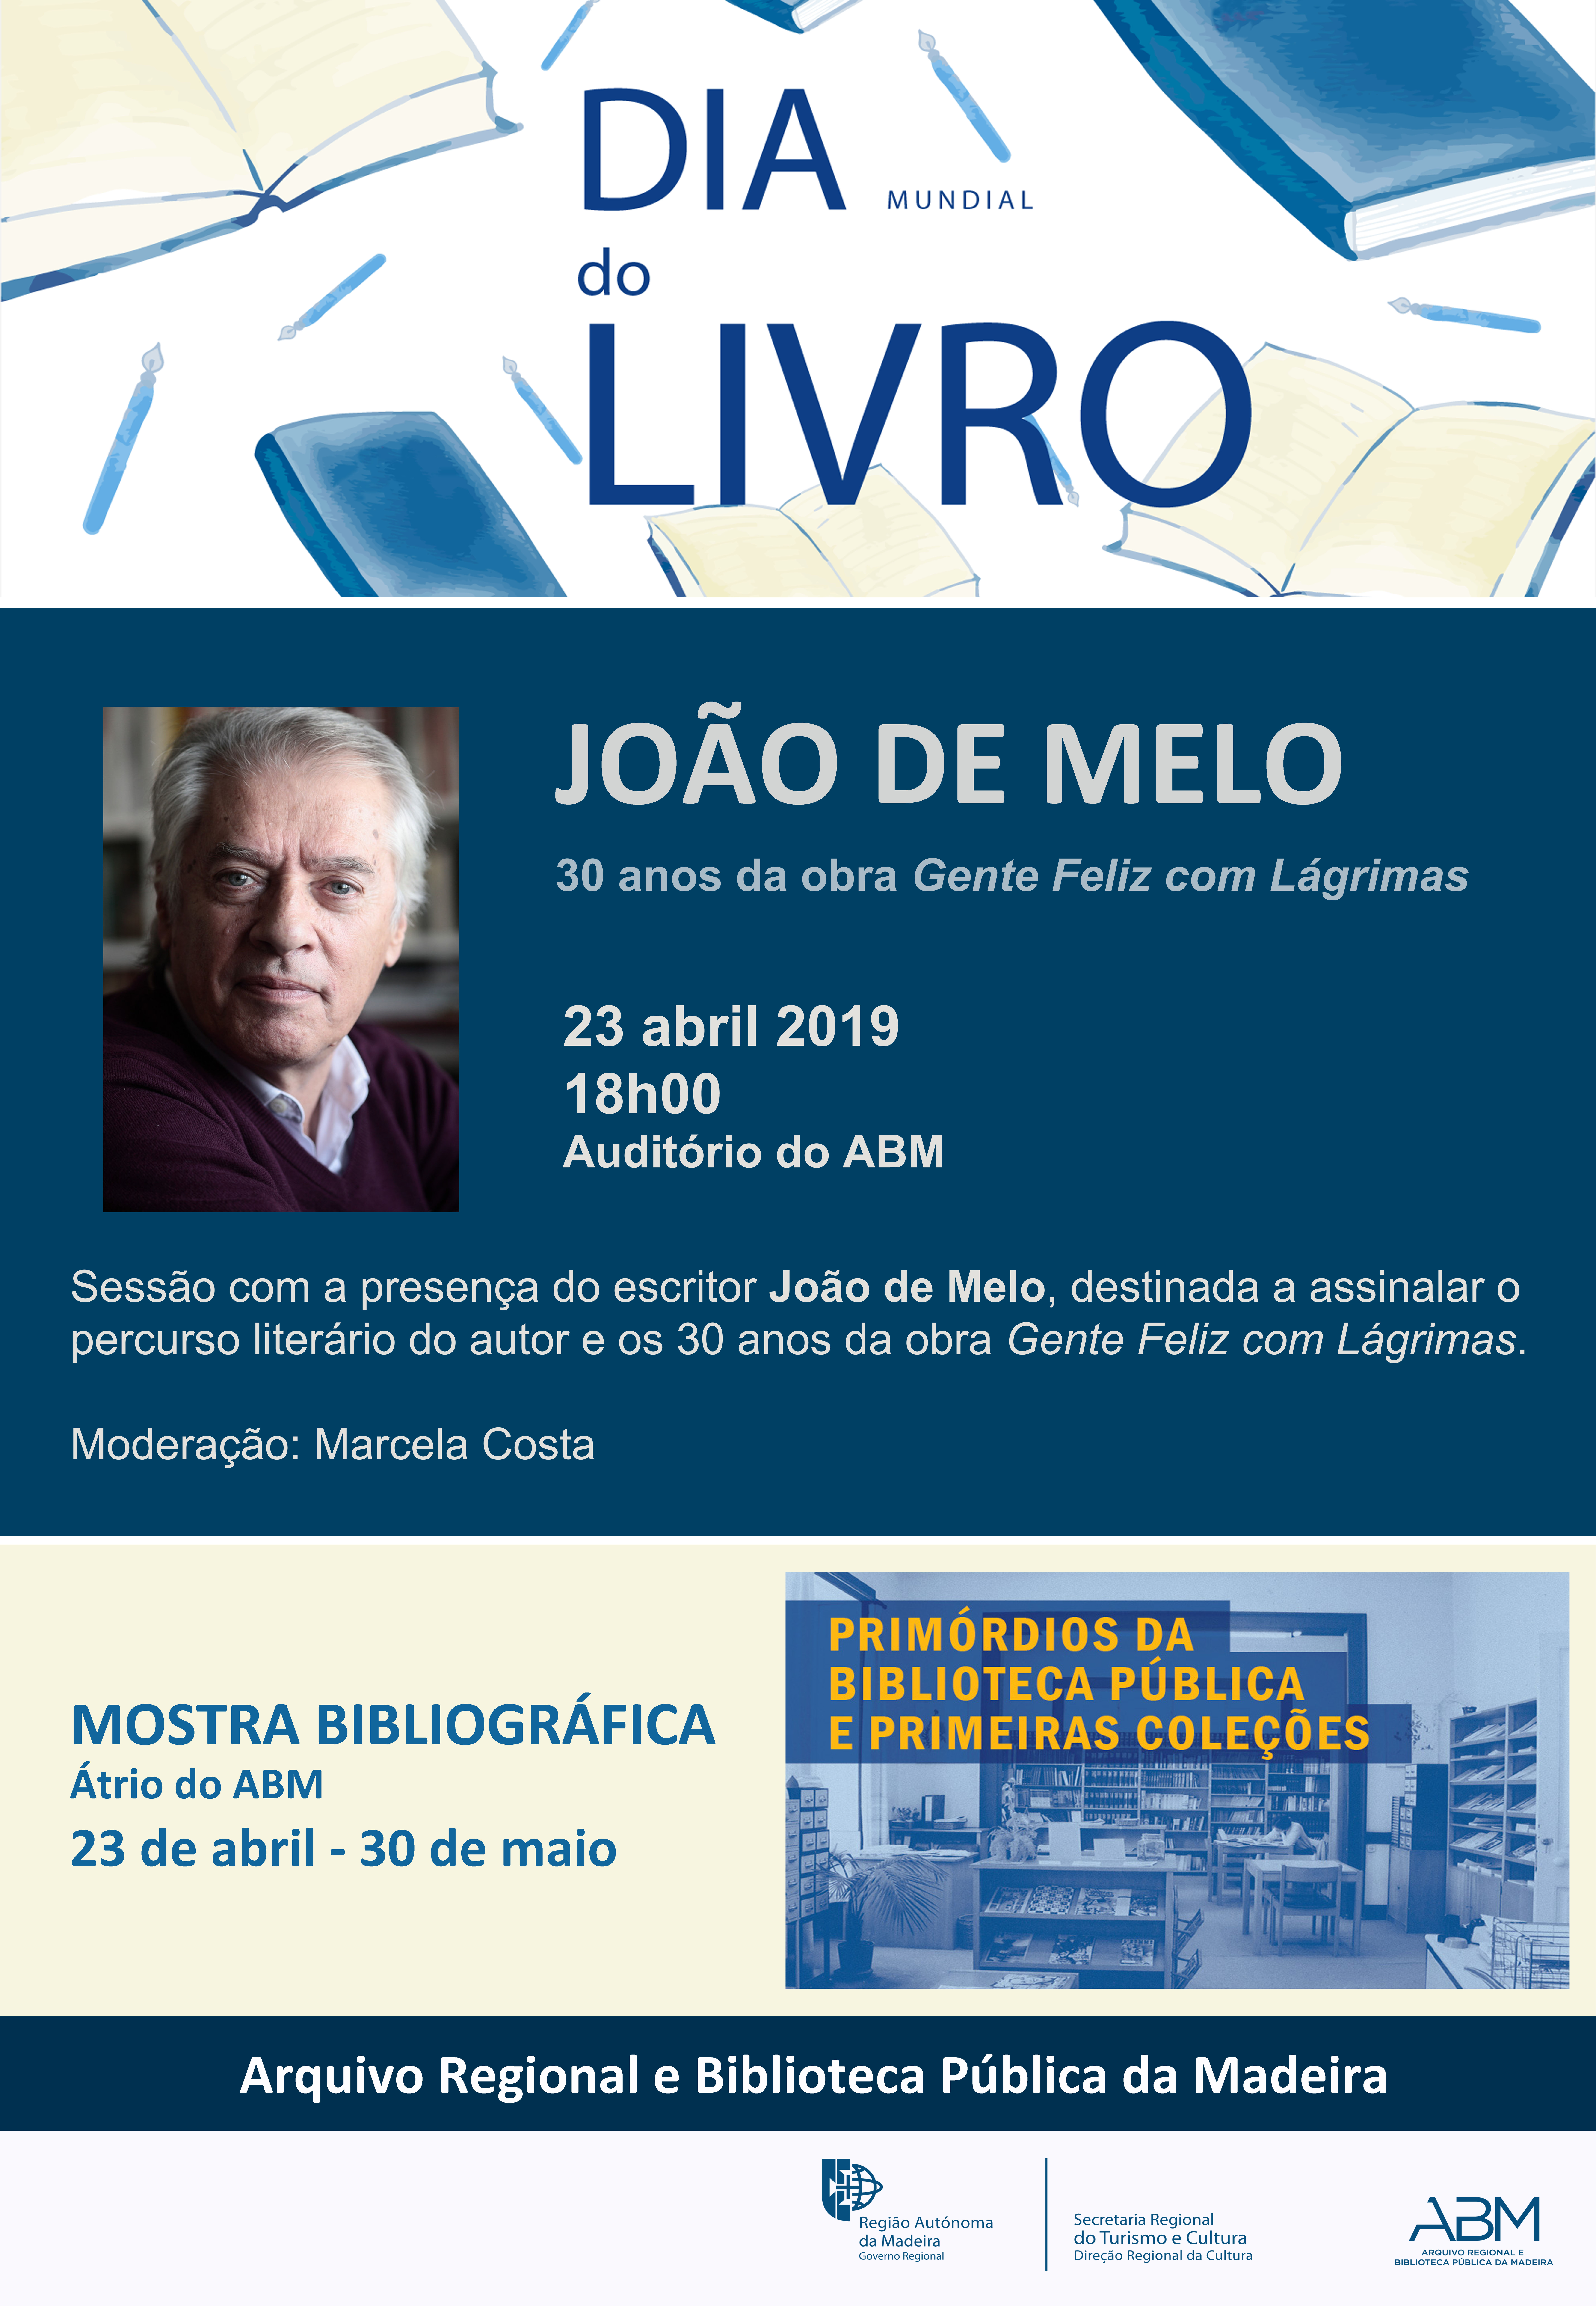 Sessão com o escritor João de Melo e Mostra Bibliográfica assinalam Dia Mundial do Livro 